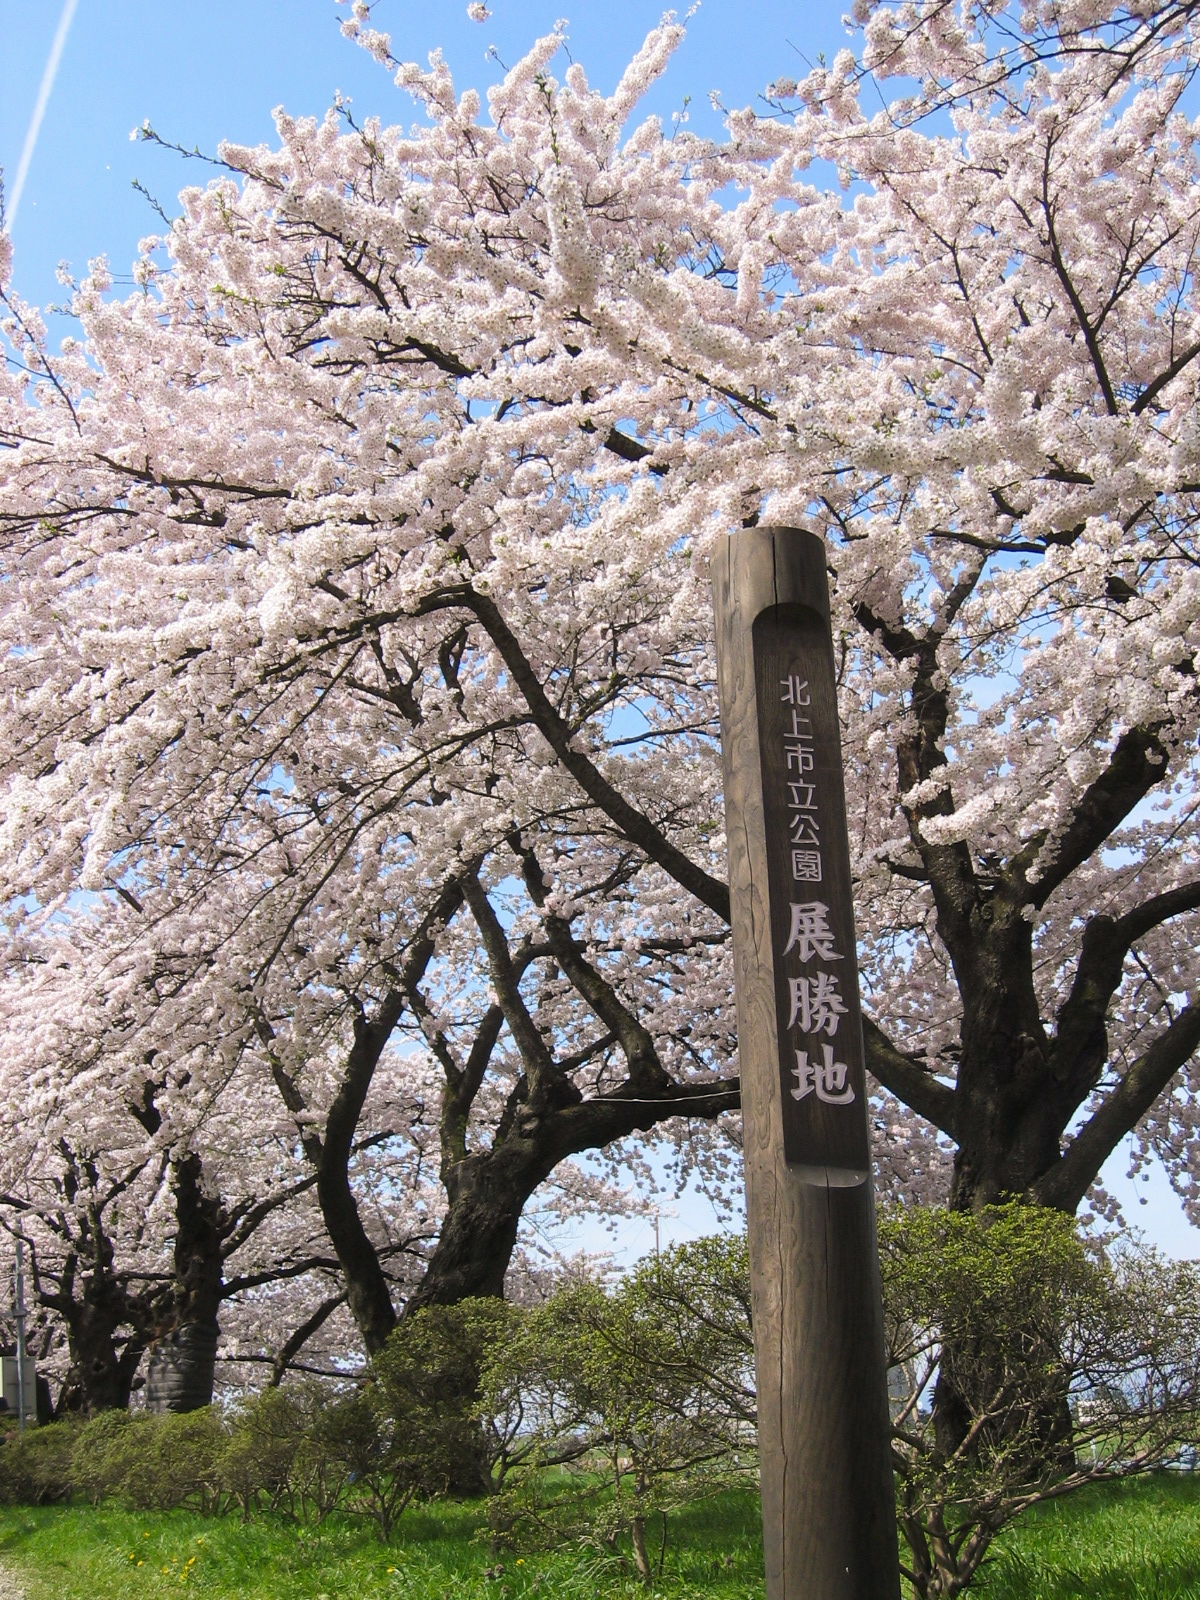 树龄超过90年的巨型樱树 ※借用图片（北上观光行业协会）